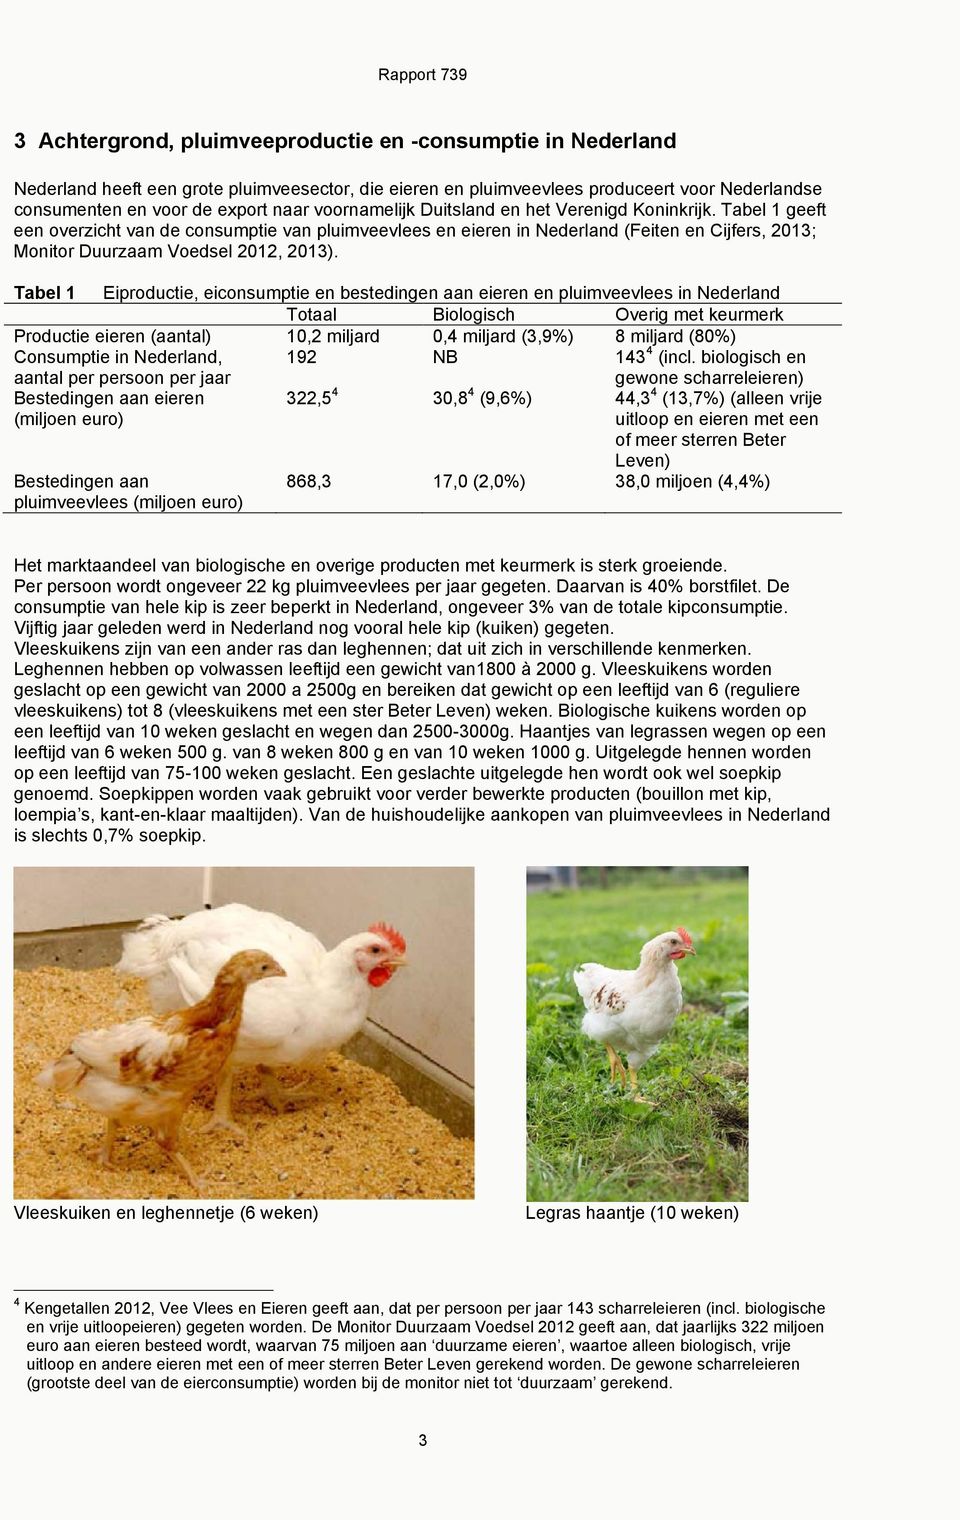 Tabel 1 geeft een overzicht van de consumptie van pluimveevlees en eieren in Nederland (Feiten en Cijfers, 2013; Monitor Duurzaam Voedsel 2012, 2013).